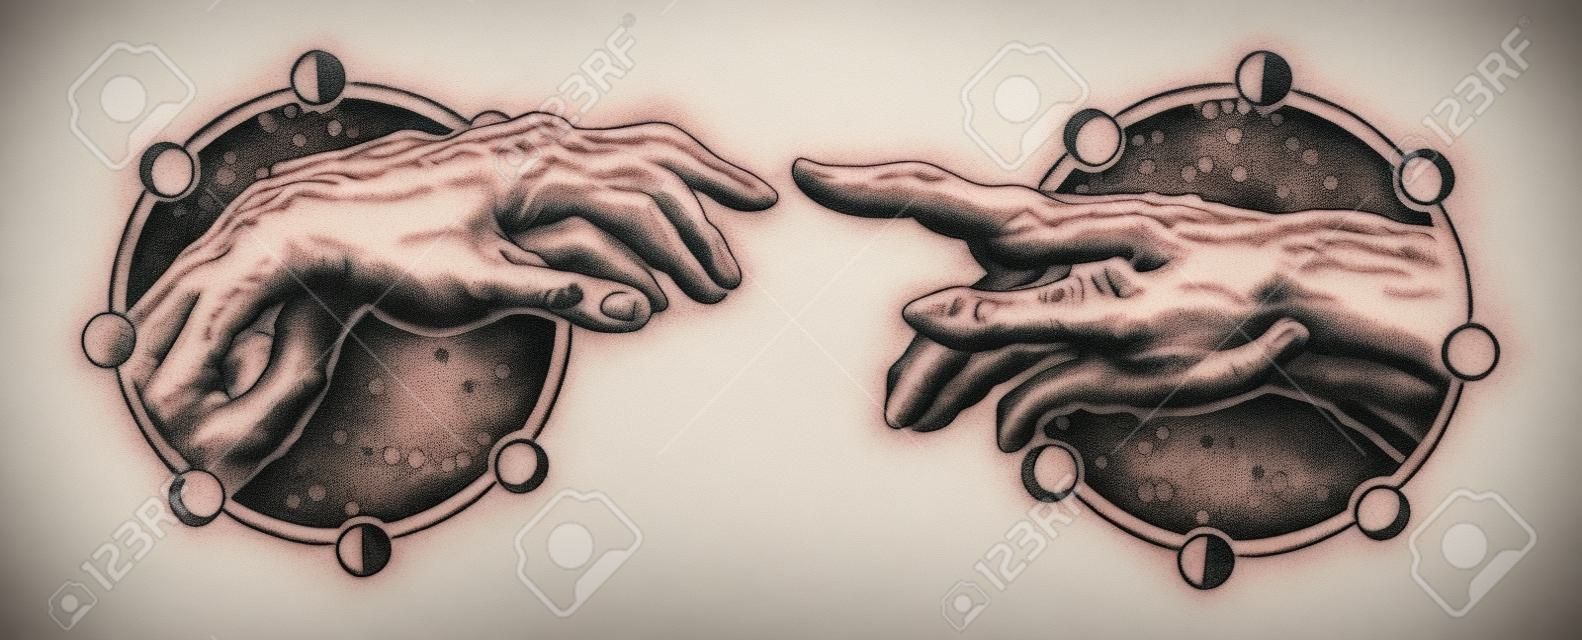 米開朗基羅上帝的觸摸。人的雙手撫摸著手指紋身和t卹設計。手紋身文藝復興。上帝和亞當，是靈性，宗教，連接和互動的象徵